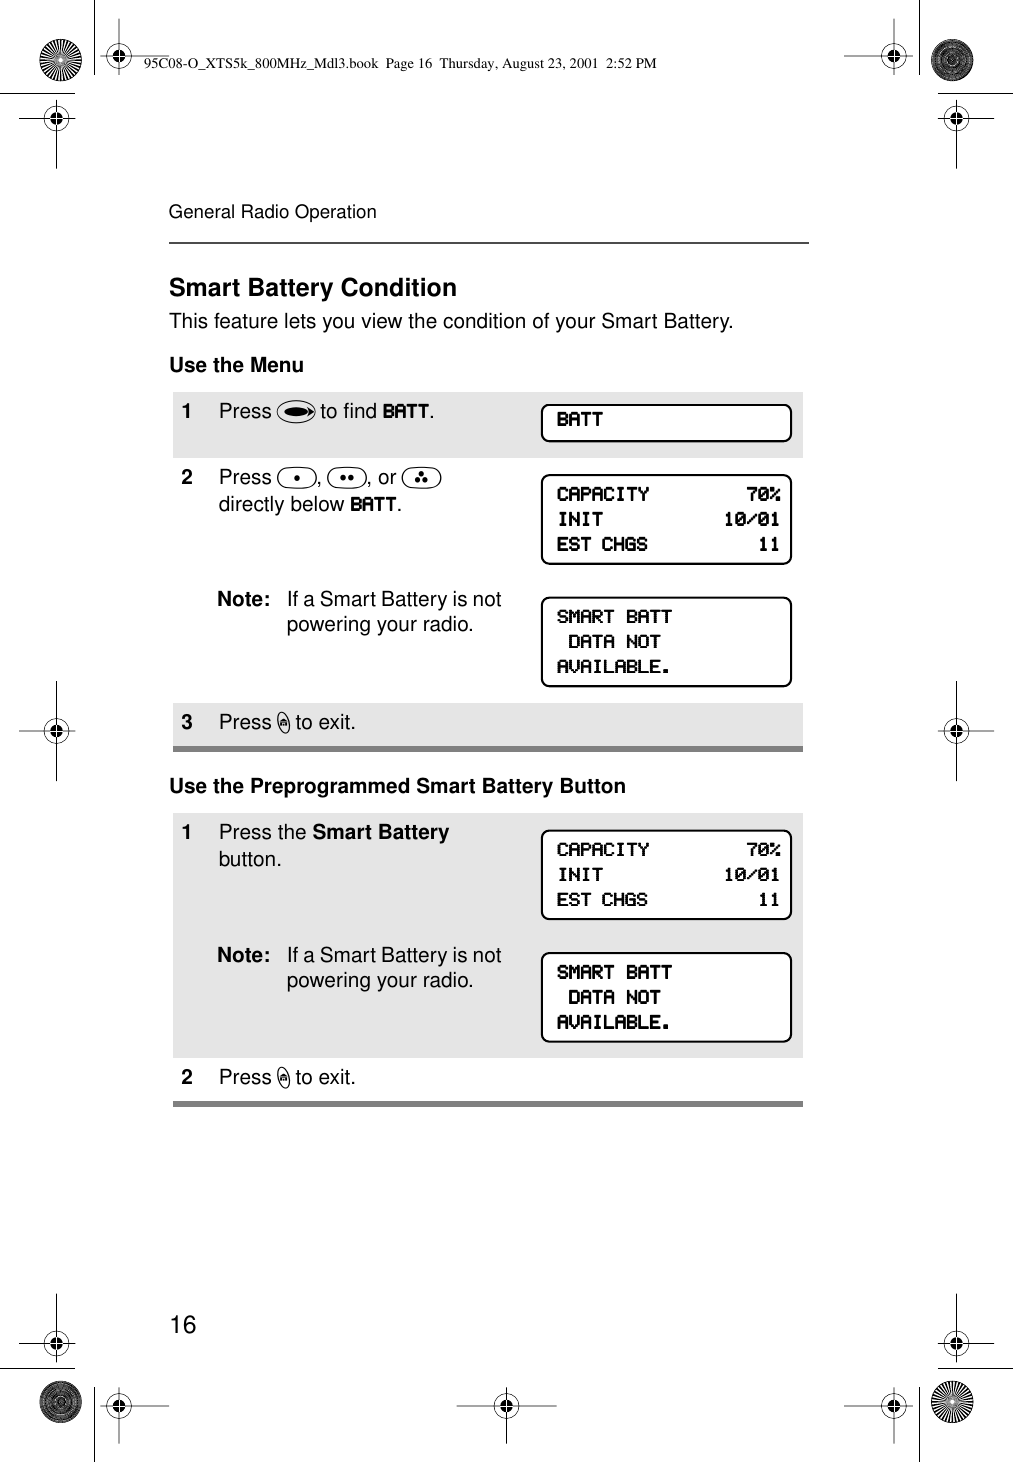 16General Radio OperationSmart Battery ConditionThis feature lets you view the condition of your Smart Battery.Use the MenuUse the Preprogrammed Smart Battery Button1Press U to ﬁnd BBBBAAAATTTTTTTT.2Press D, E, or F directly below BBBBAAAATTTTTTTT.Note: If a Smart Battery is not powering your radio.3Press h to exit.1Press the Smart Battery button.Note: If a Smart Battery is not powering your radio.2Press h to exit.BBBBAAAATTTTTTTTCCCCAAAAPPPPAAAACCCCIIIITTTTYYYY                                    77770000%%%%IIIINNNNIIIITTTT                                            11110000////00001111EEEESSSSTTTT    CCCCHHHHGGGGSSSS                                            11111111SSSSMMMMAAAARRRRTTTT    BBBBAAAATTTTTTTT    DDDDAAAATTTTAAAA    NNNNOOOOTTTTAAAAVVVVAAAAIIIILLLLAAAABBBBLLLLEEEE....CCCCAAAAPPPPAAAACCCCIIIITTTTYYYY                                    77770000%%%%IIIINNNNIIIITTTT                                            11110000////00001111EEEESSSSTTTT    CCCCHHHHGGGGSSSS                                            11111111SSSSMMMMAAAARRRRTTTT    BBBBAAAATTTTTTTT    DDDDAAAATTTTAAAA    NNNNOOOOTTTTAAAAVVVVAAAAIIIILLLLAAAABBBBLLLLEEEE....95C08-O_XTS5k_800MHz_Mdl3.book  Page 16  Thursday, August 23, 2001  2:52 PM